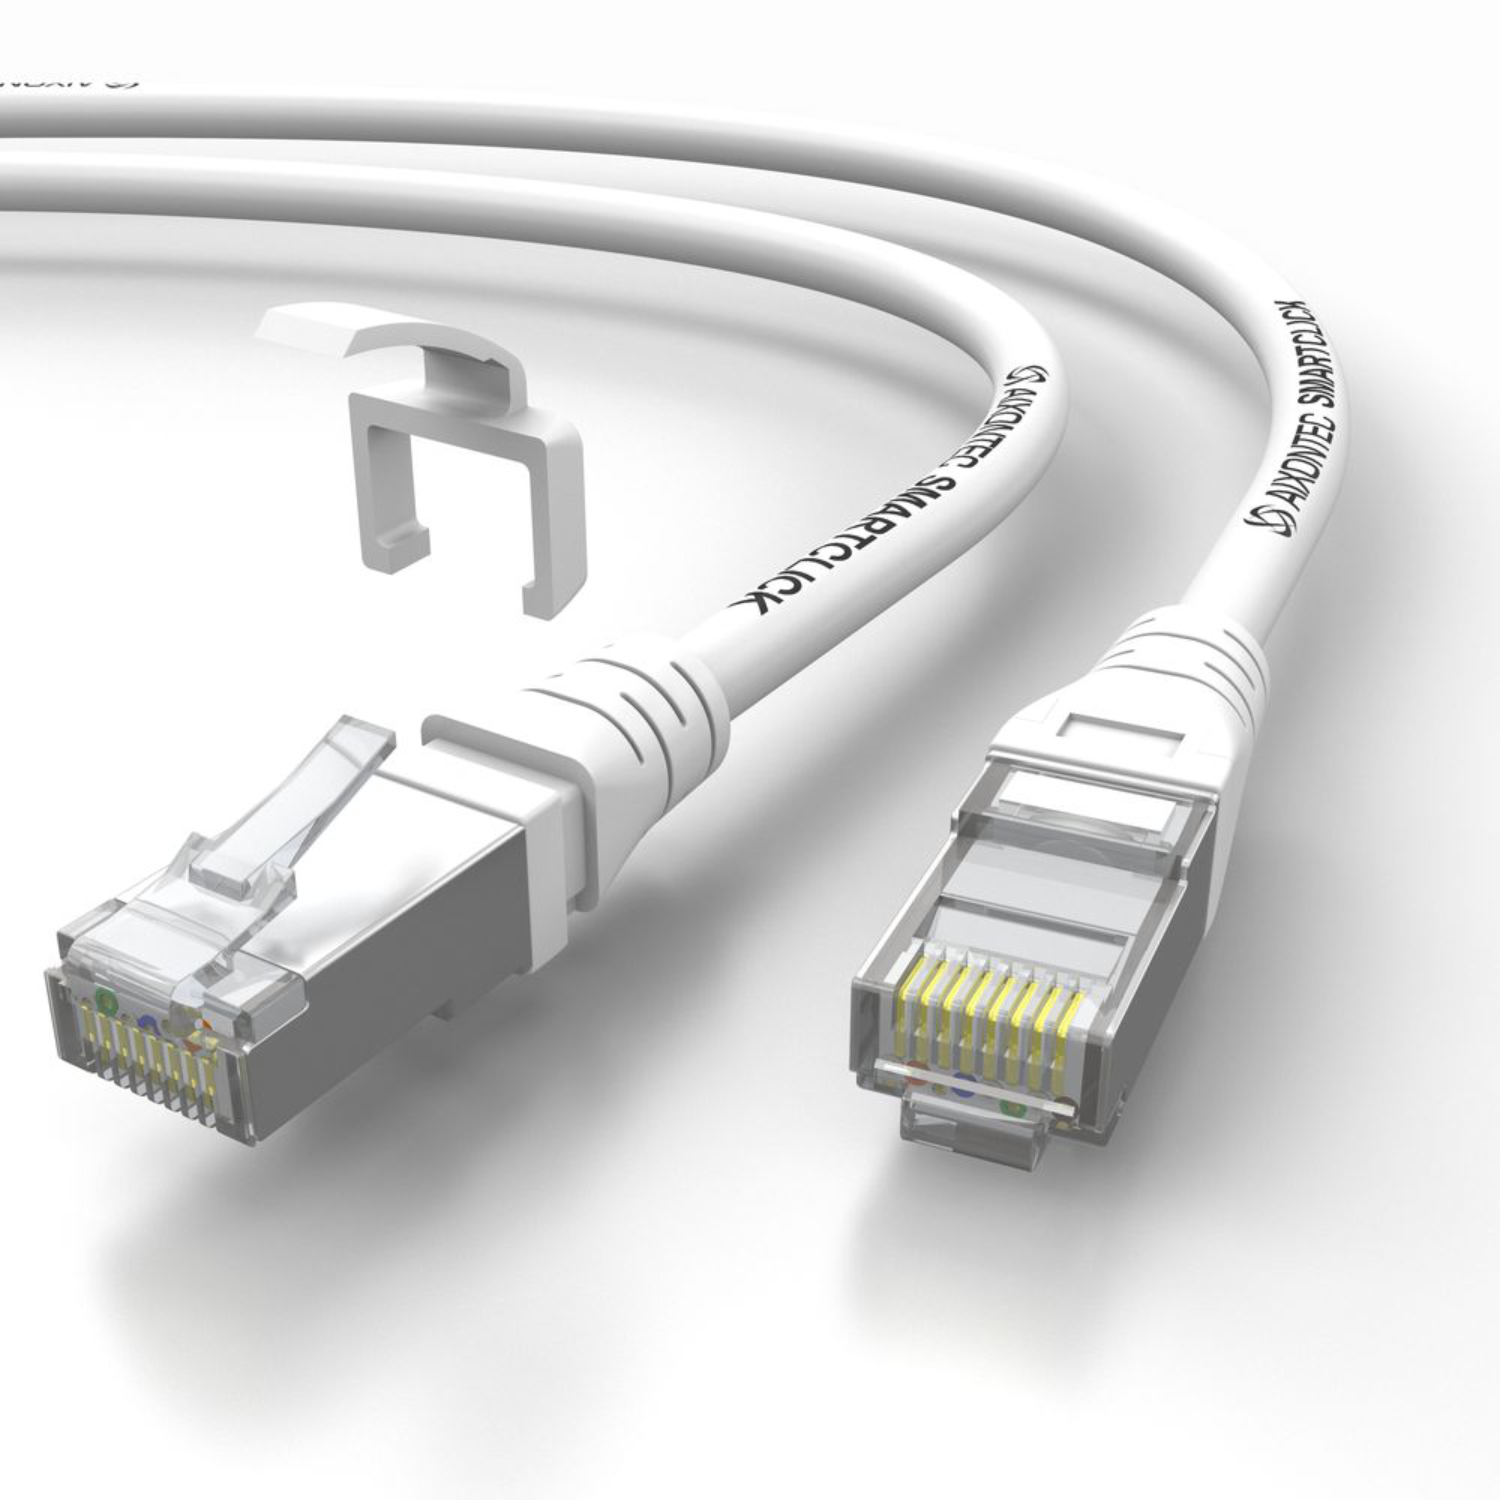 AIXONTEC 12,0m Cat.6A RJ45 10 m Lankabel Ethernetkabel Patchkabel Gigabit, 12,0 Netzwerkkabel